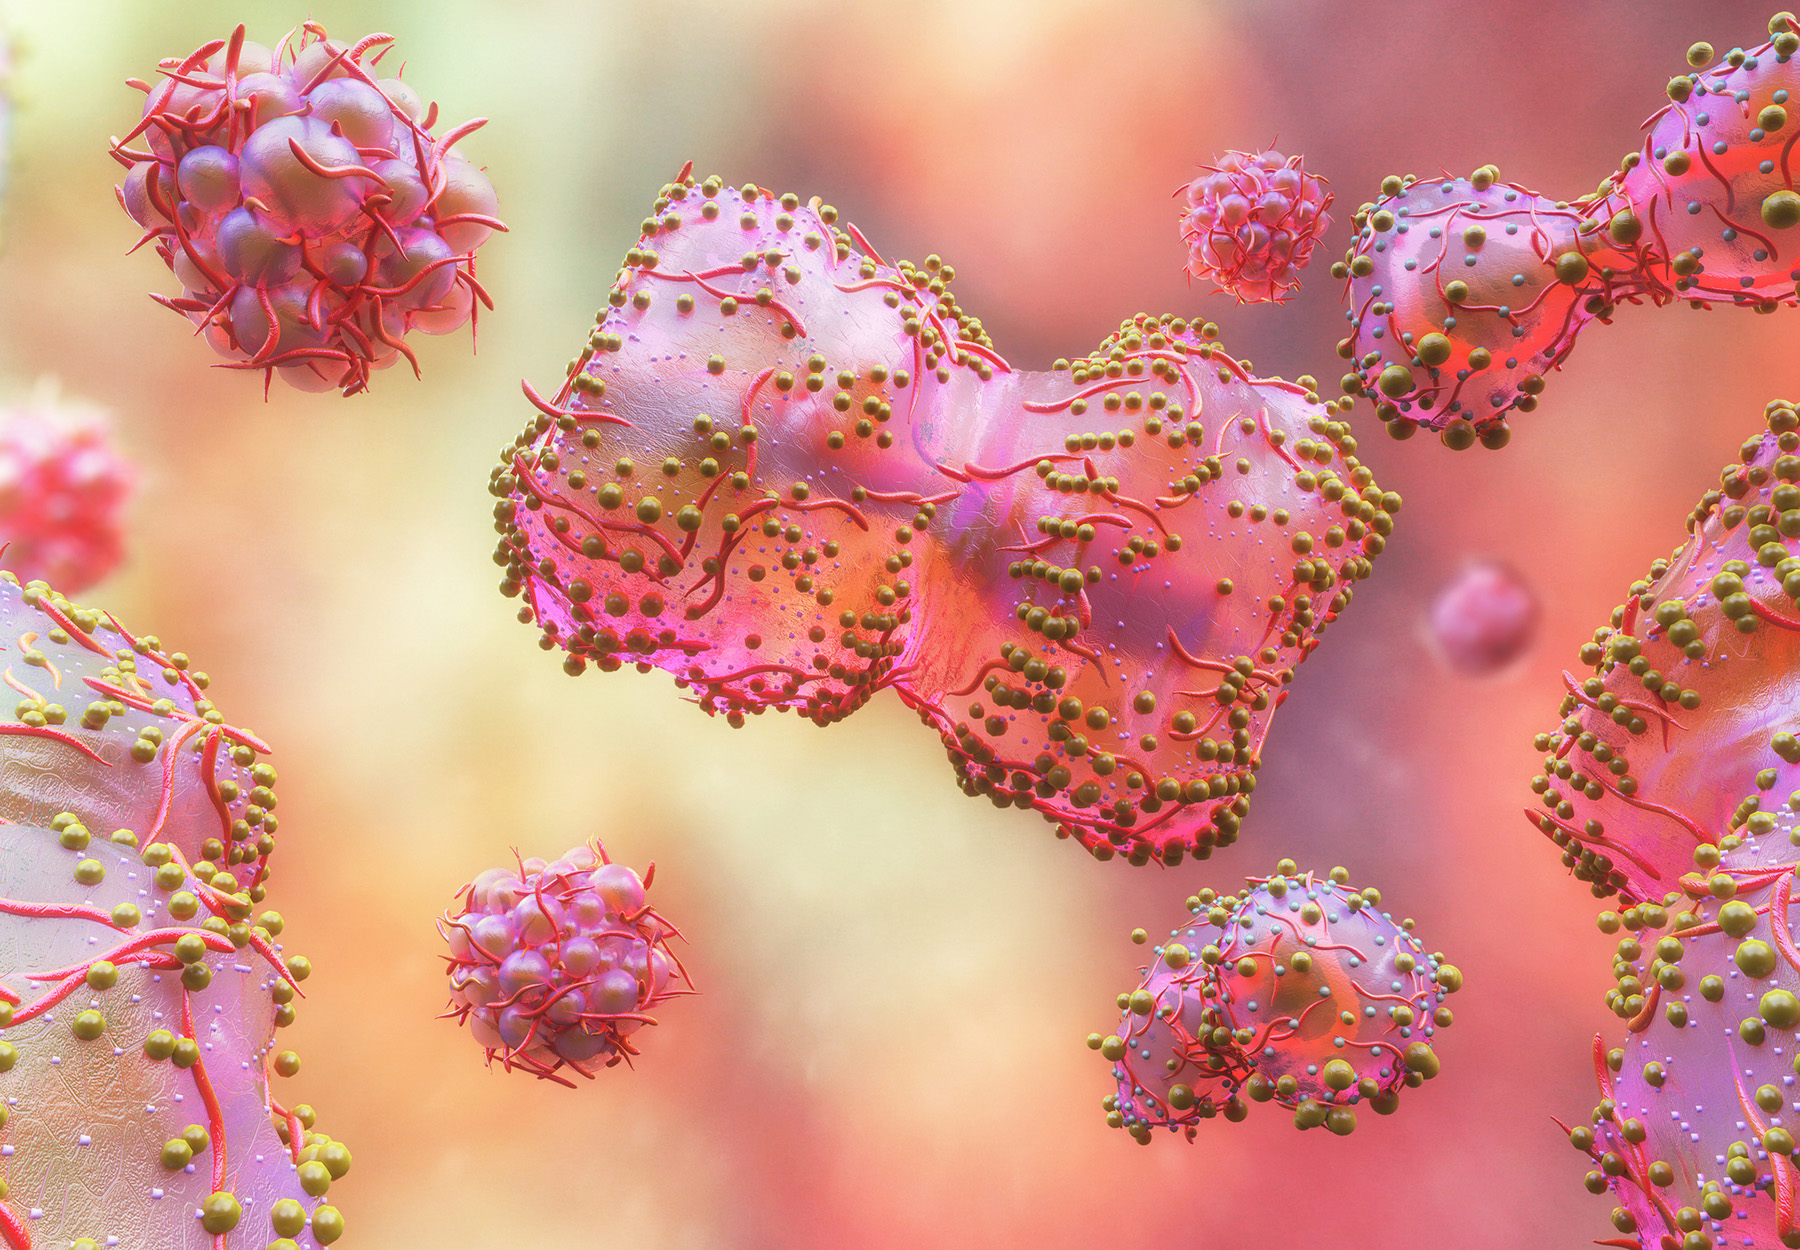 Monkeypox Virus cells stock illustration